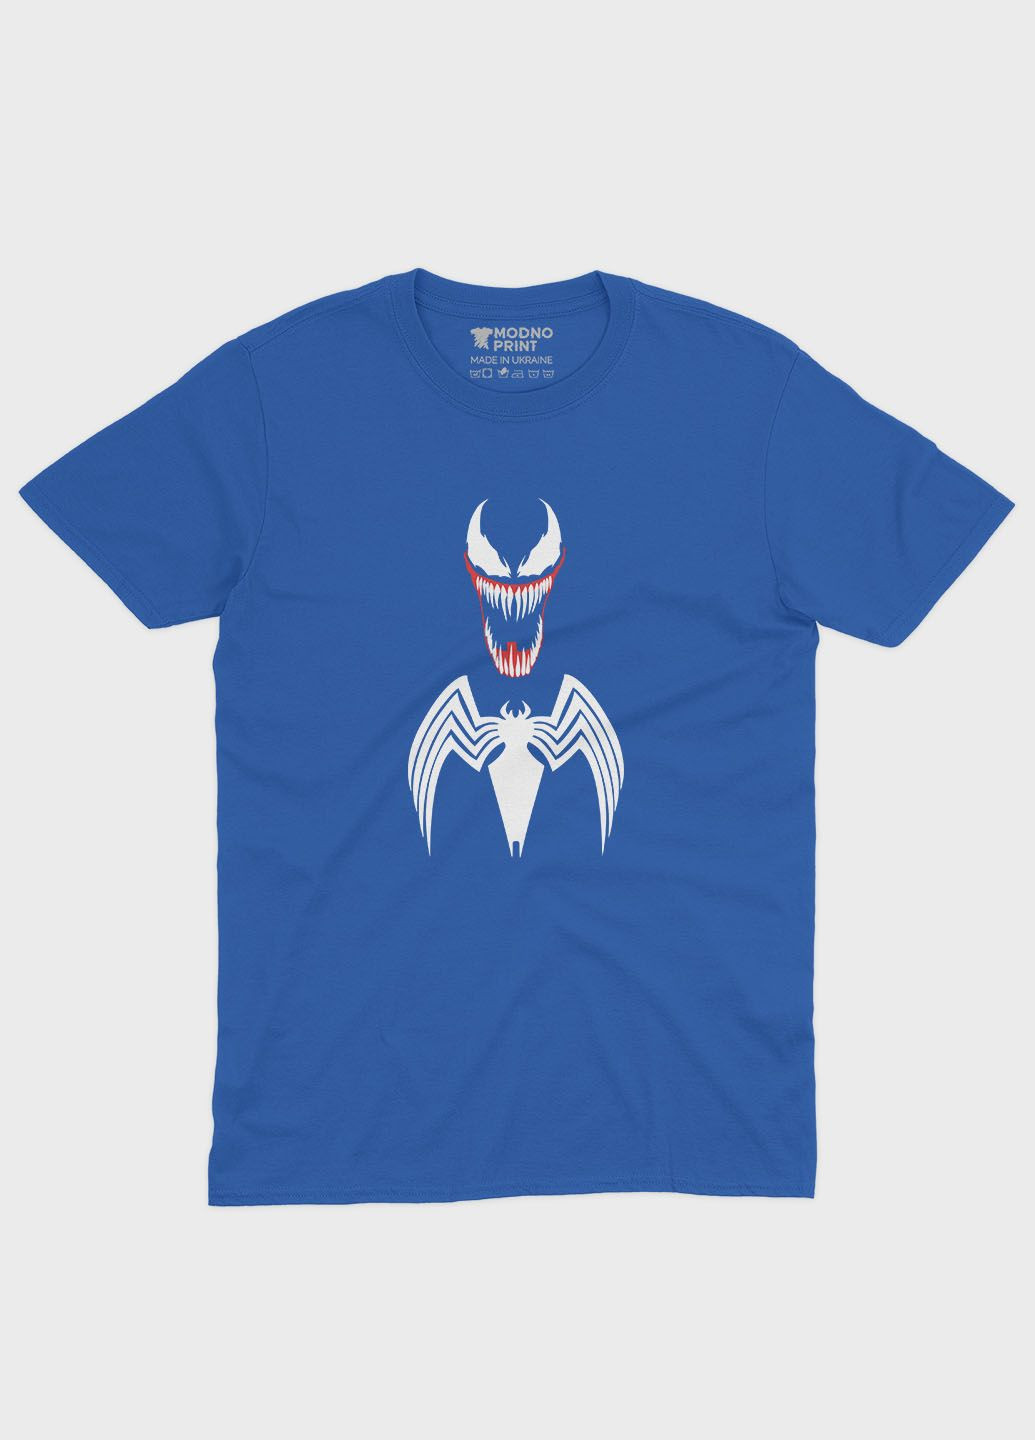 Синяя демисезонная футболка для мальчика с принтом супервора - веном (ts001-1-brr-006-013-008-b) Modno